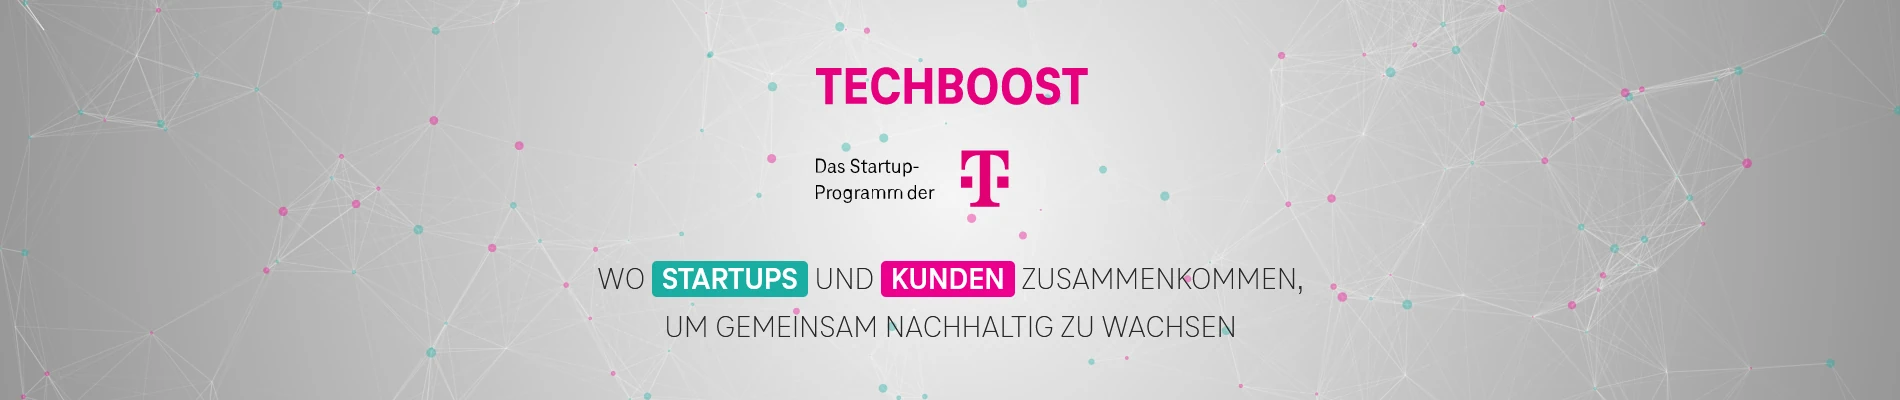 CampusGenius joins Techboost at Deutsche Telekom